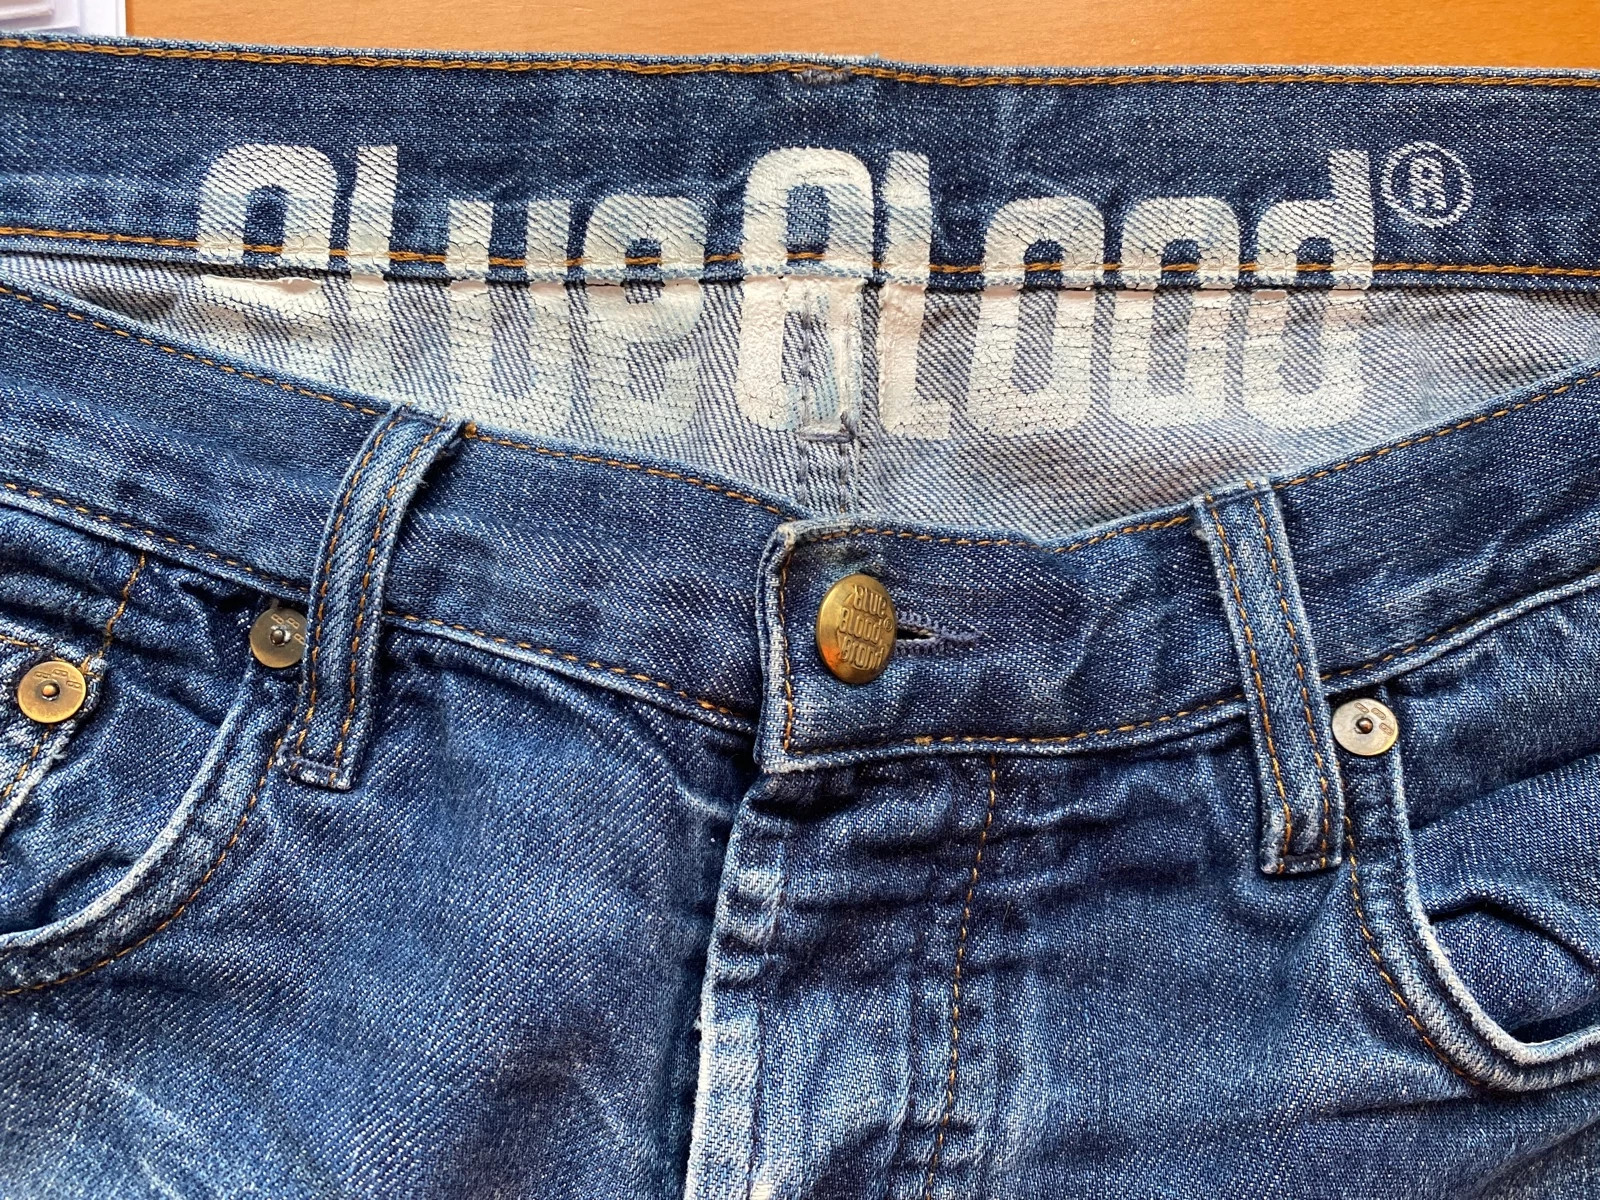 Blueblood jeans